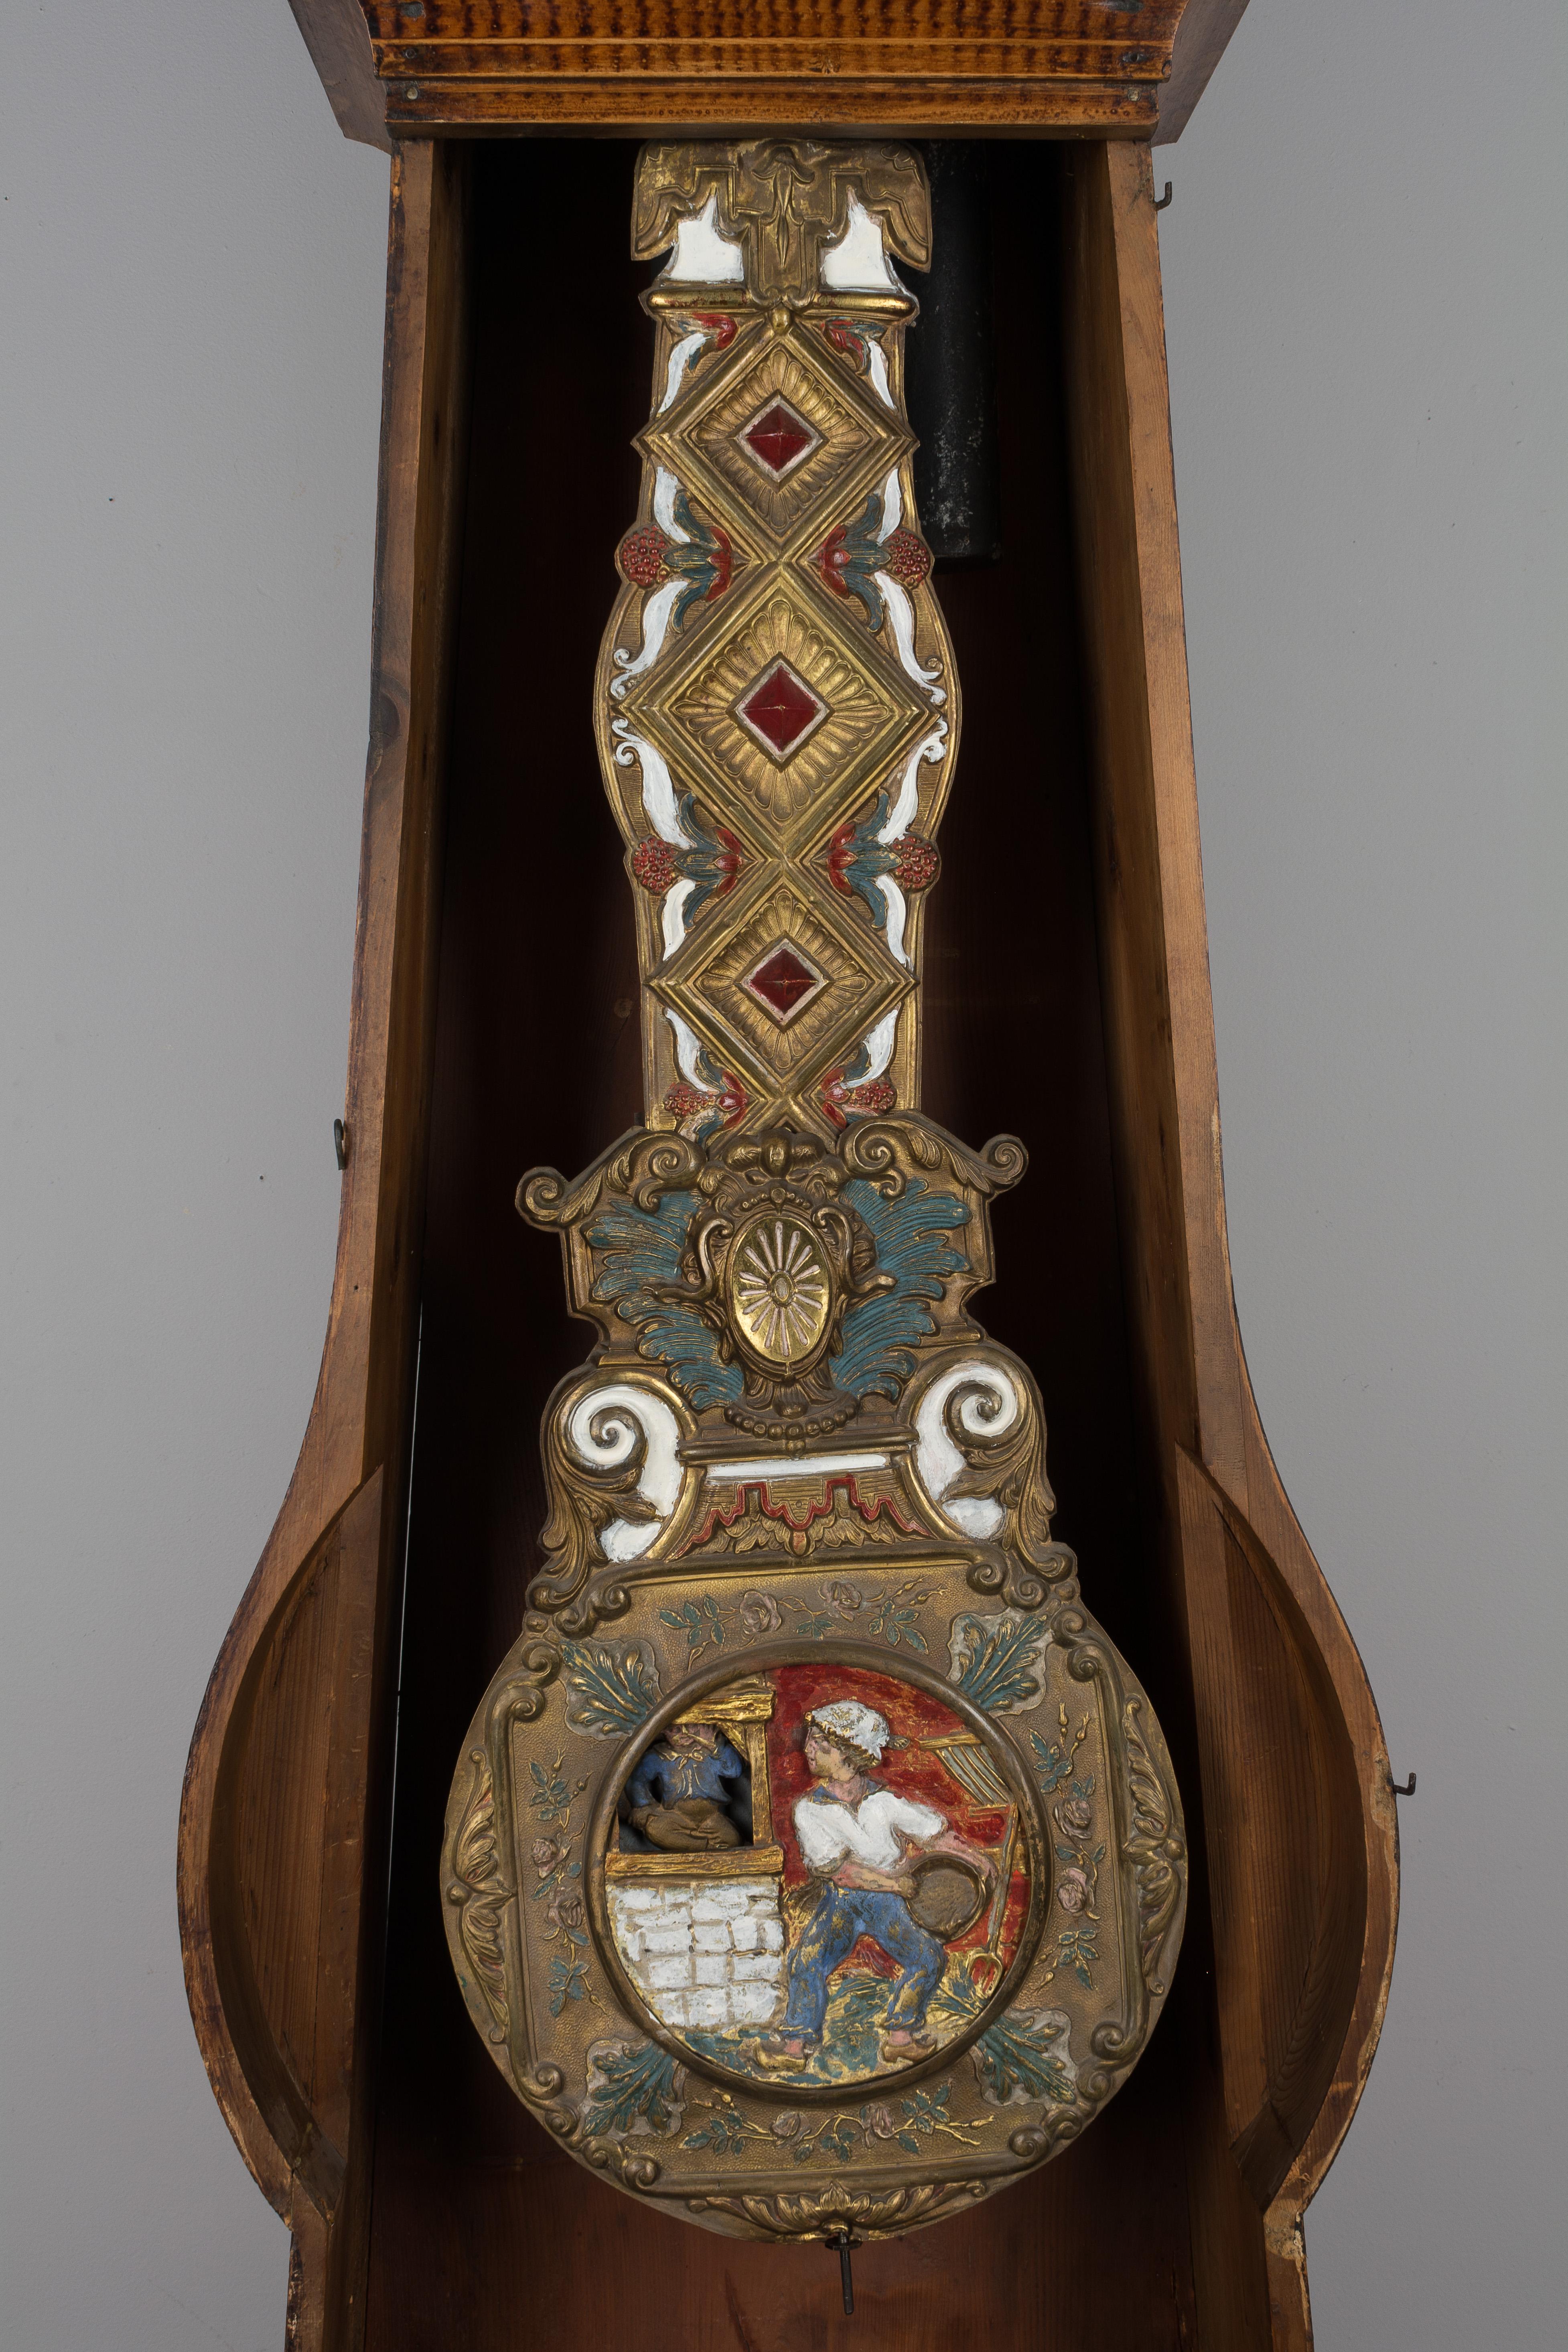 Provincial français pendule comtoise française du 19ème siècle avec pendule automatique